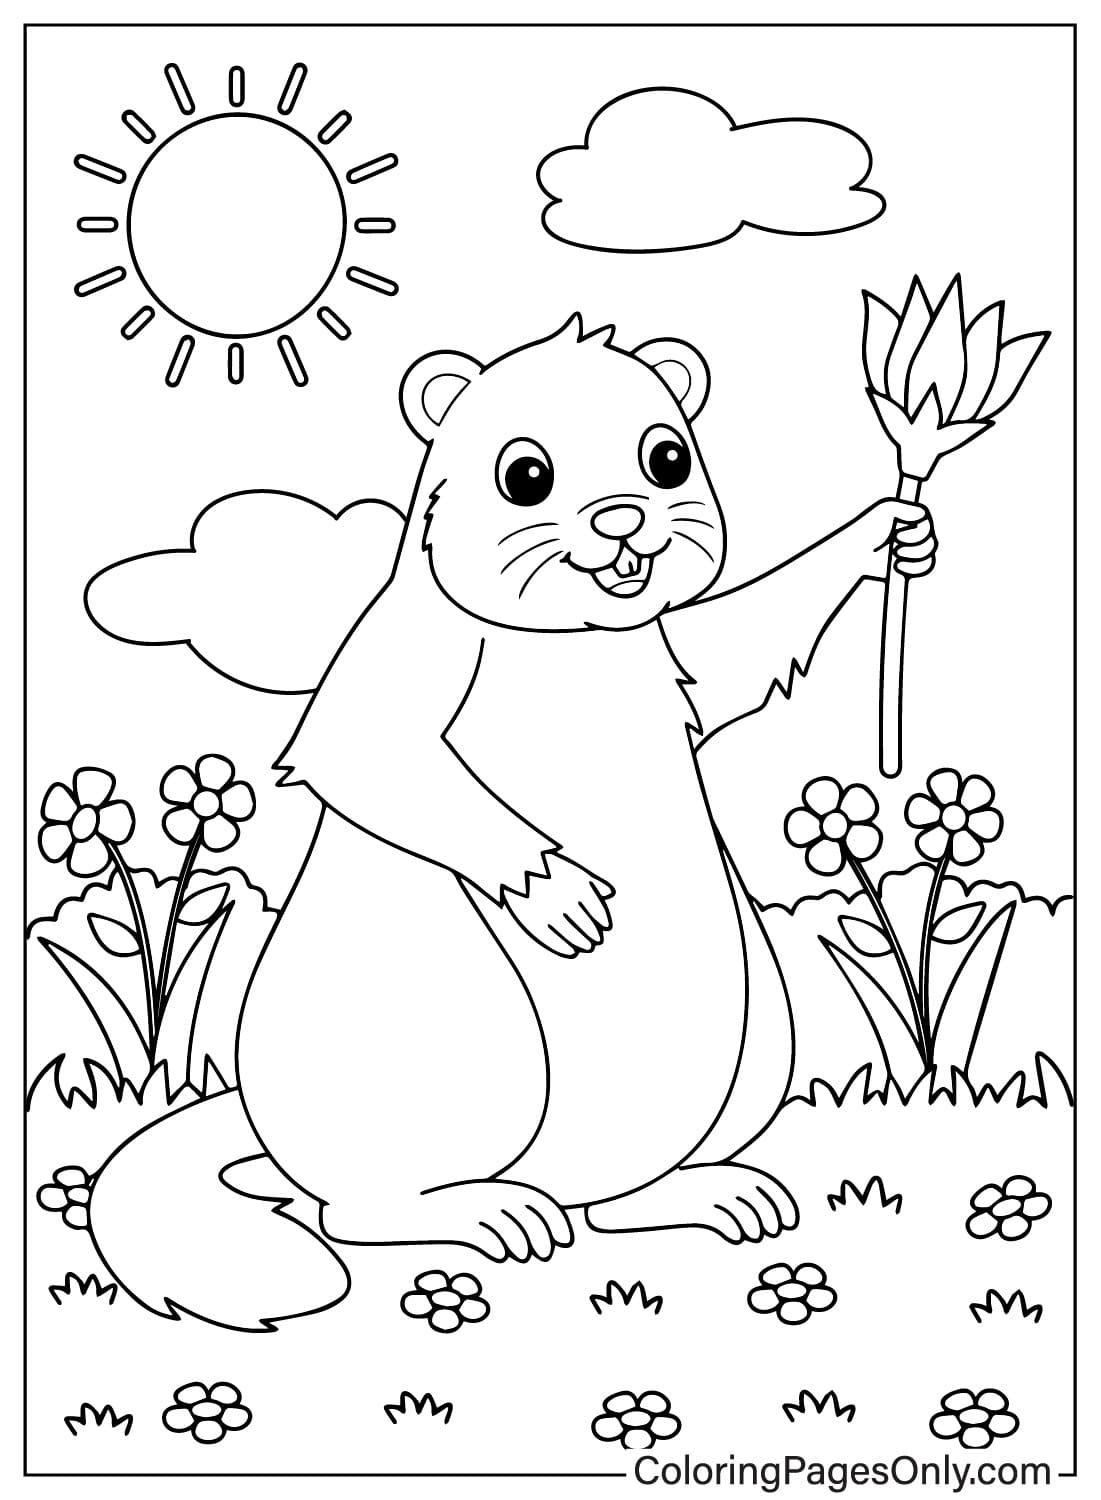 Página para colorear de la marmota del Día de la Marmota